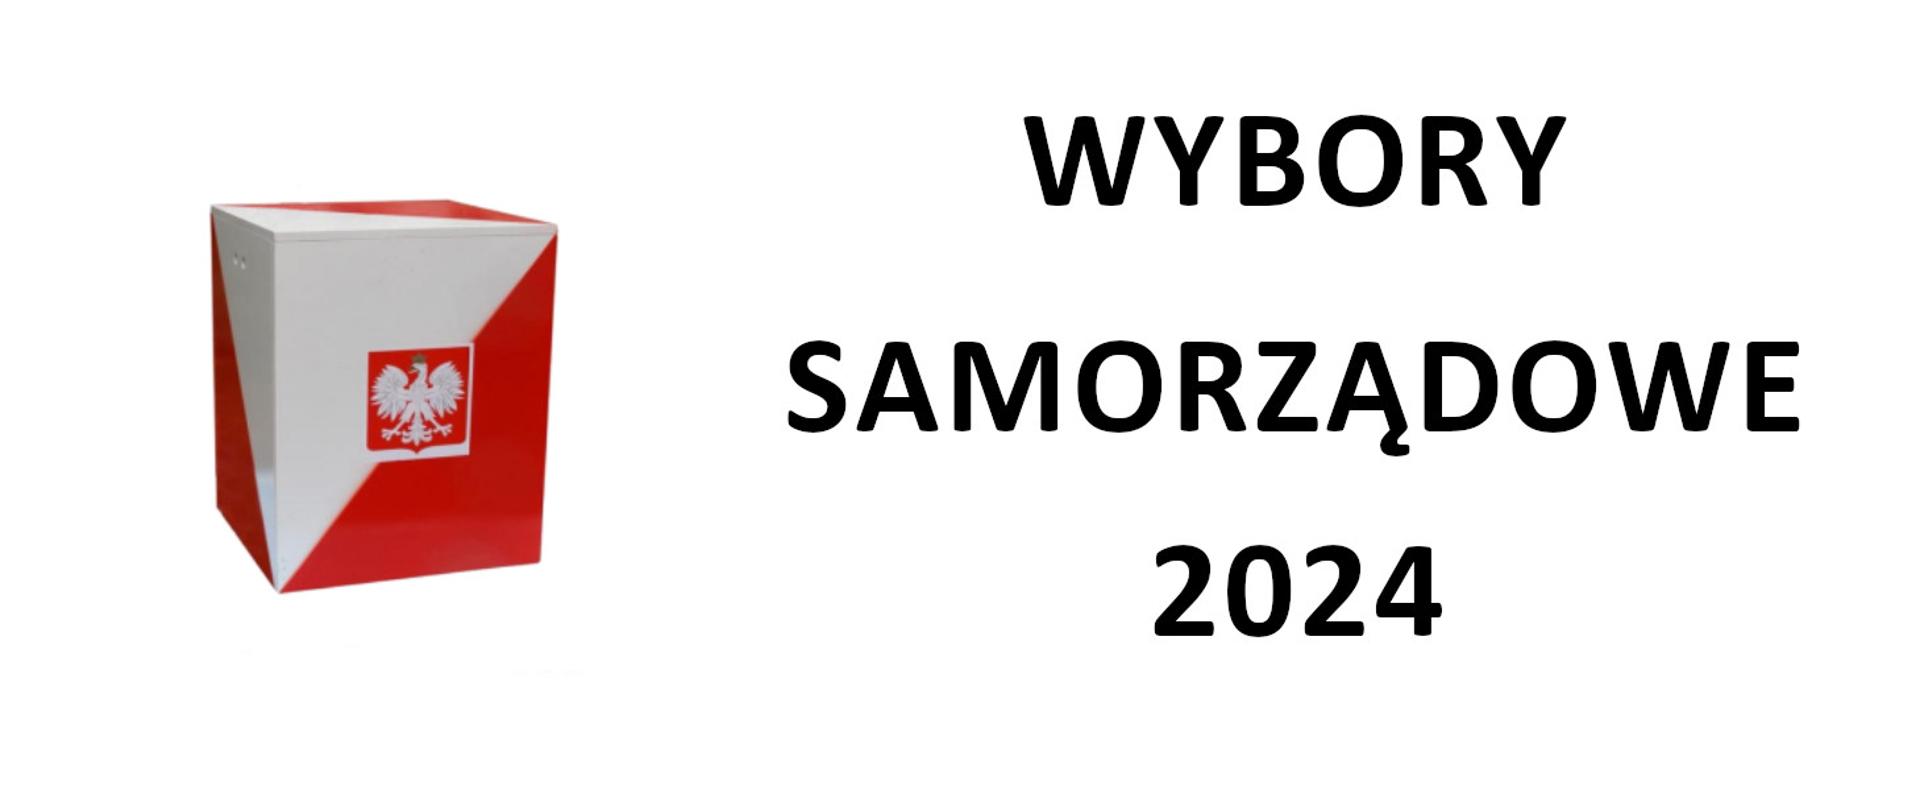 Z lewej strony urna wyborcza, z prawej strony napis Wybory samorządowe 2024